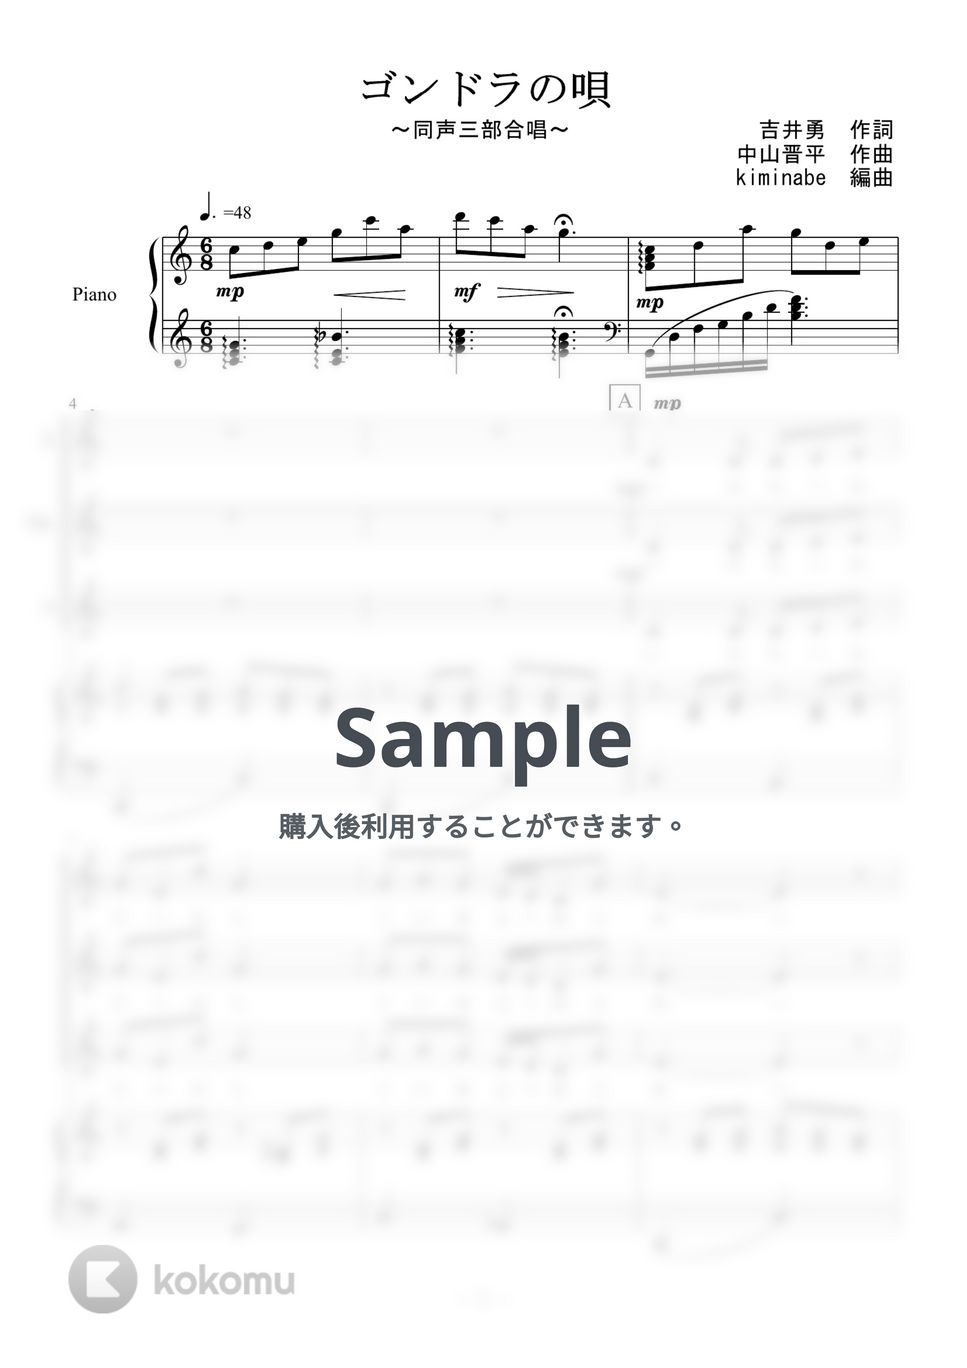 中山晋平 - ゴンドラの唄 (同声三部合唱) by kiminabe